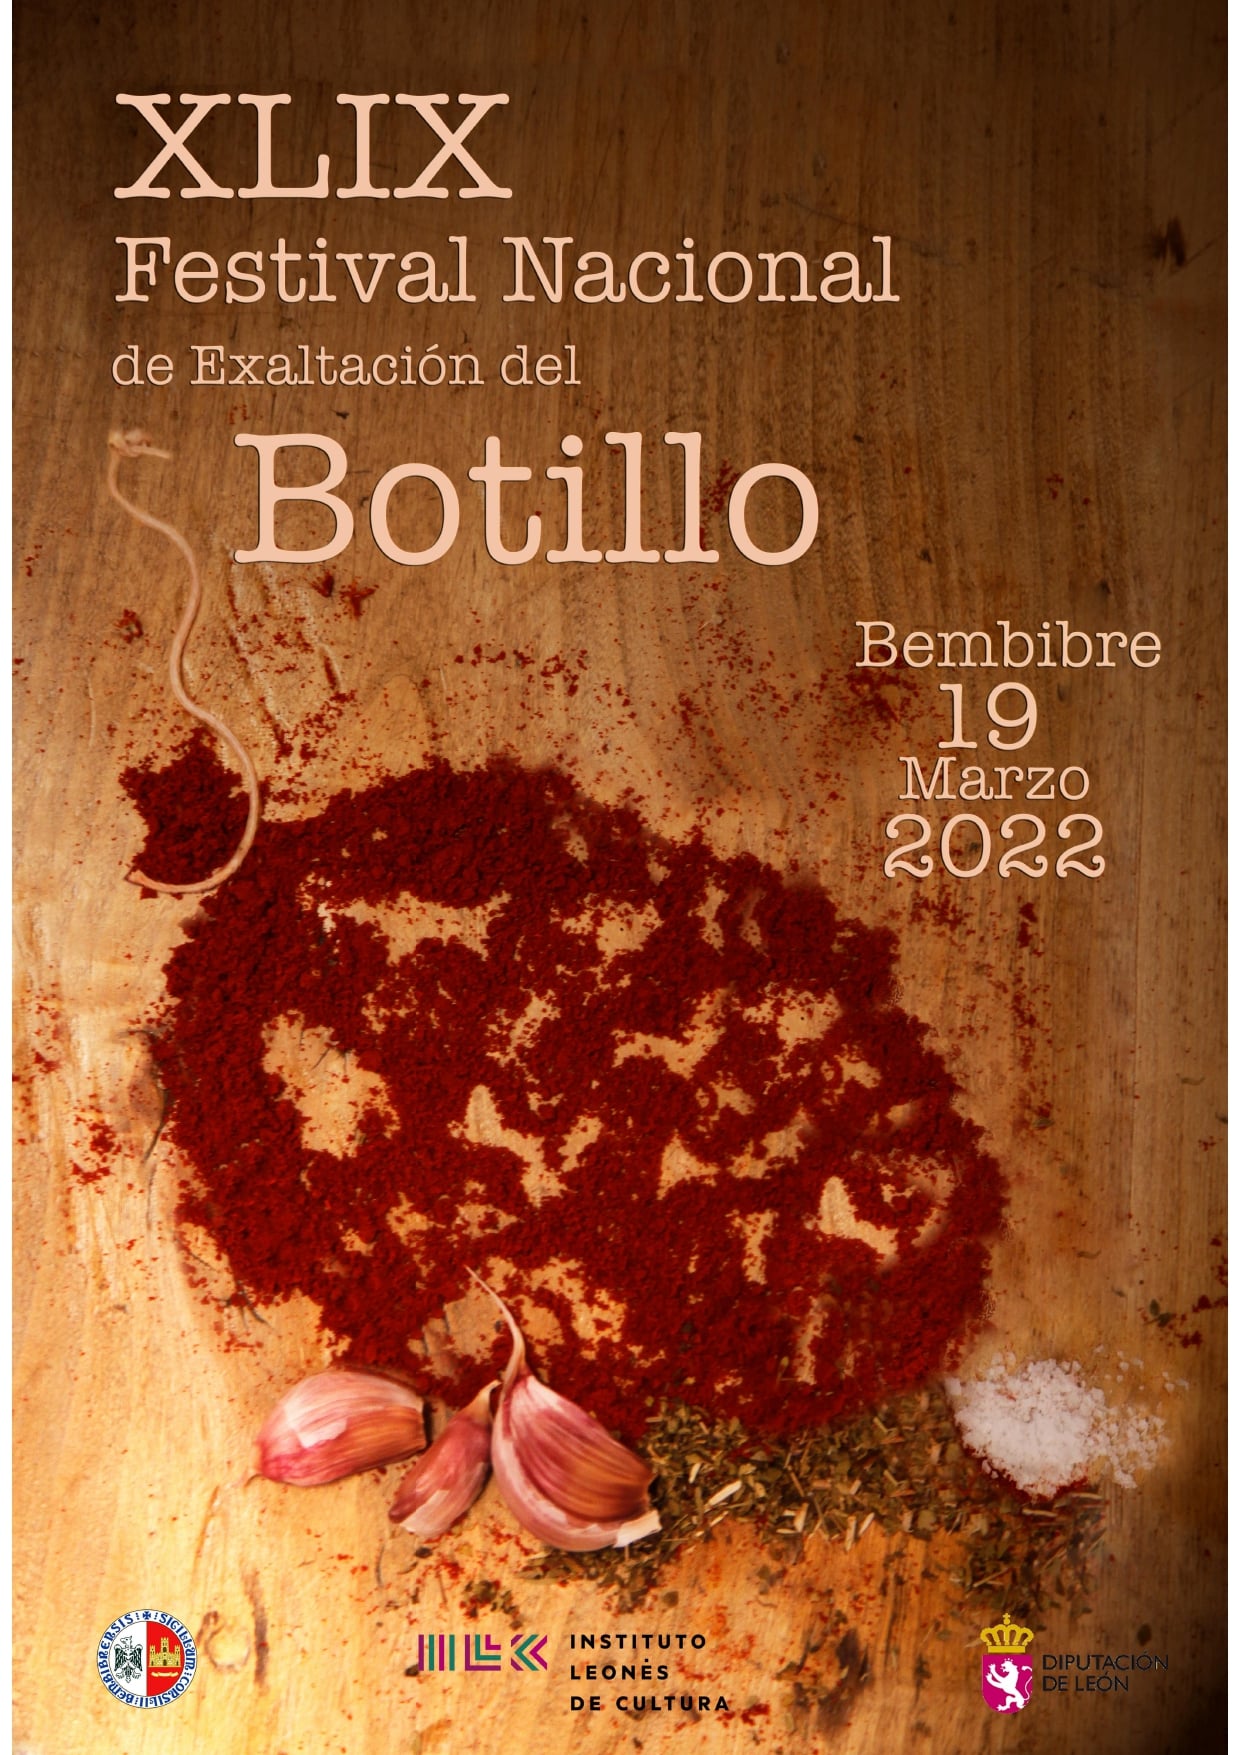 El XLIX Festival Nacional de Exaltación del Botillo ya tiene cartel ganador 2